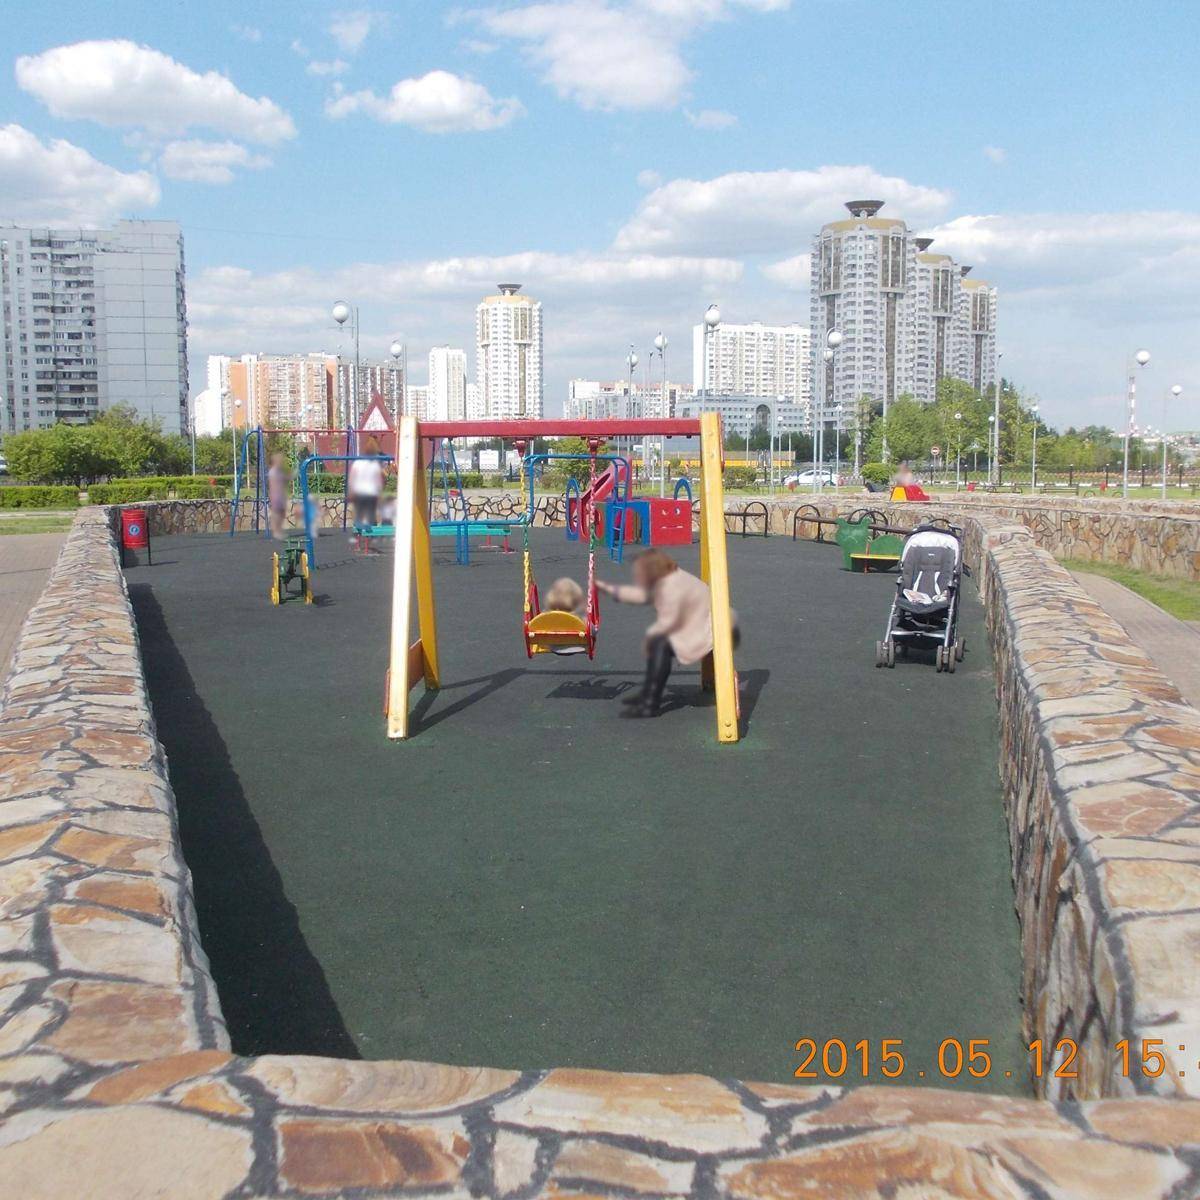 Фото: Площадка детская игровая в парке Имени Артема Боровика 